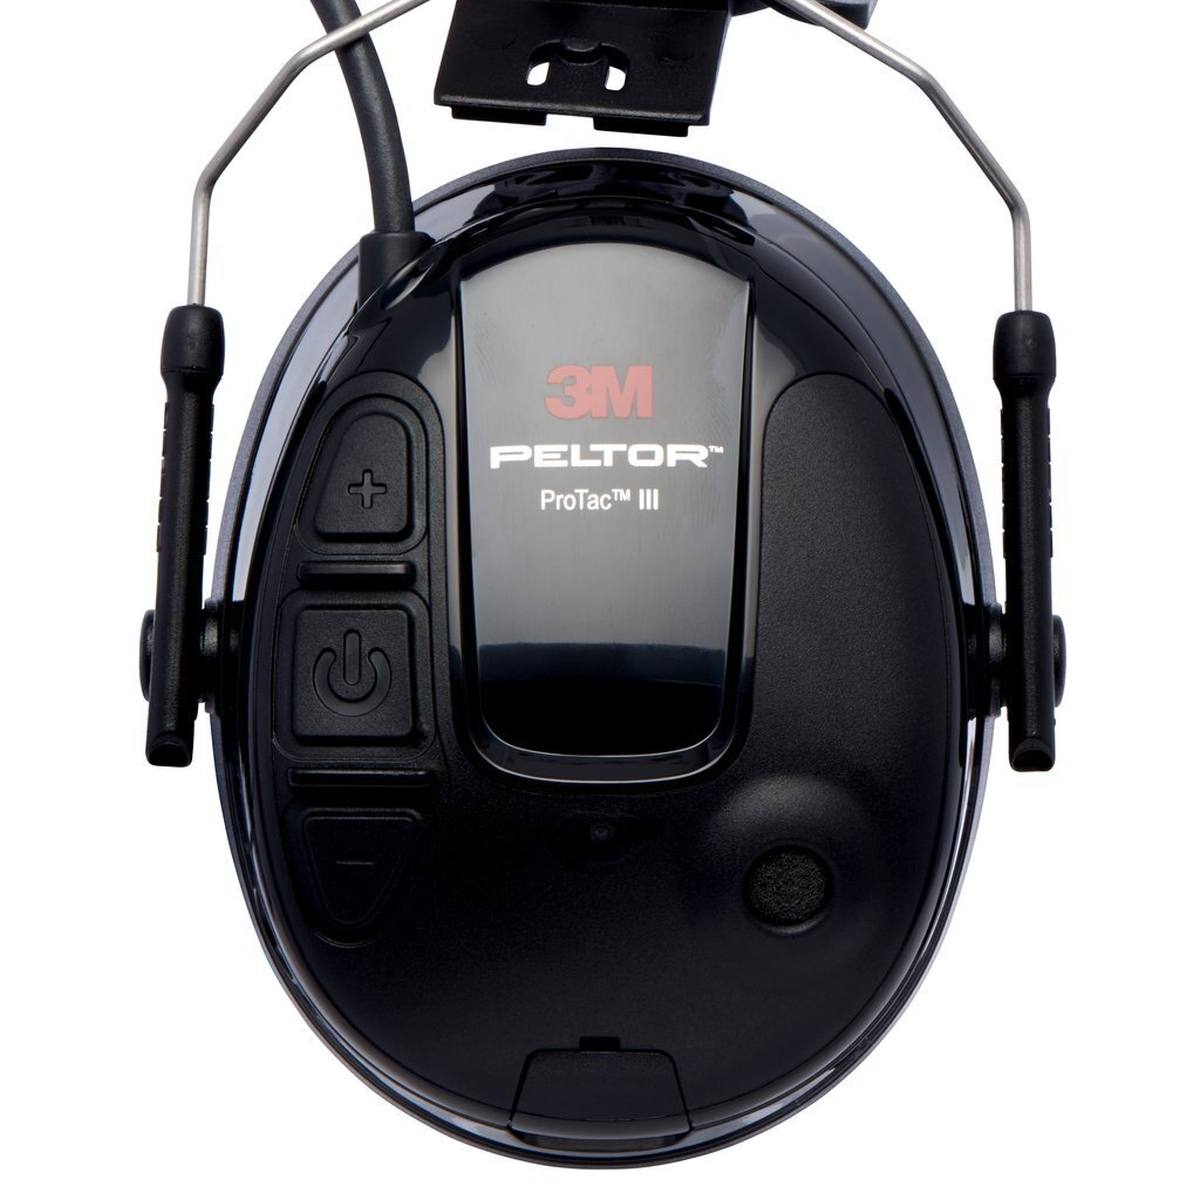 3M PELTOR ProTac III Slim gehoorbeschermingsheadset, zwart, helmuitvoering, met actieve, niveauafhankelijke dempingstechnologie voor het waarnemen van omgevingsgeluid, SNR=25 dB, zwart